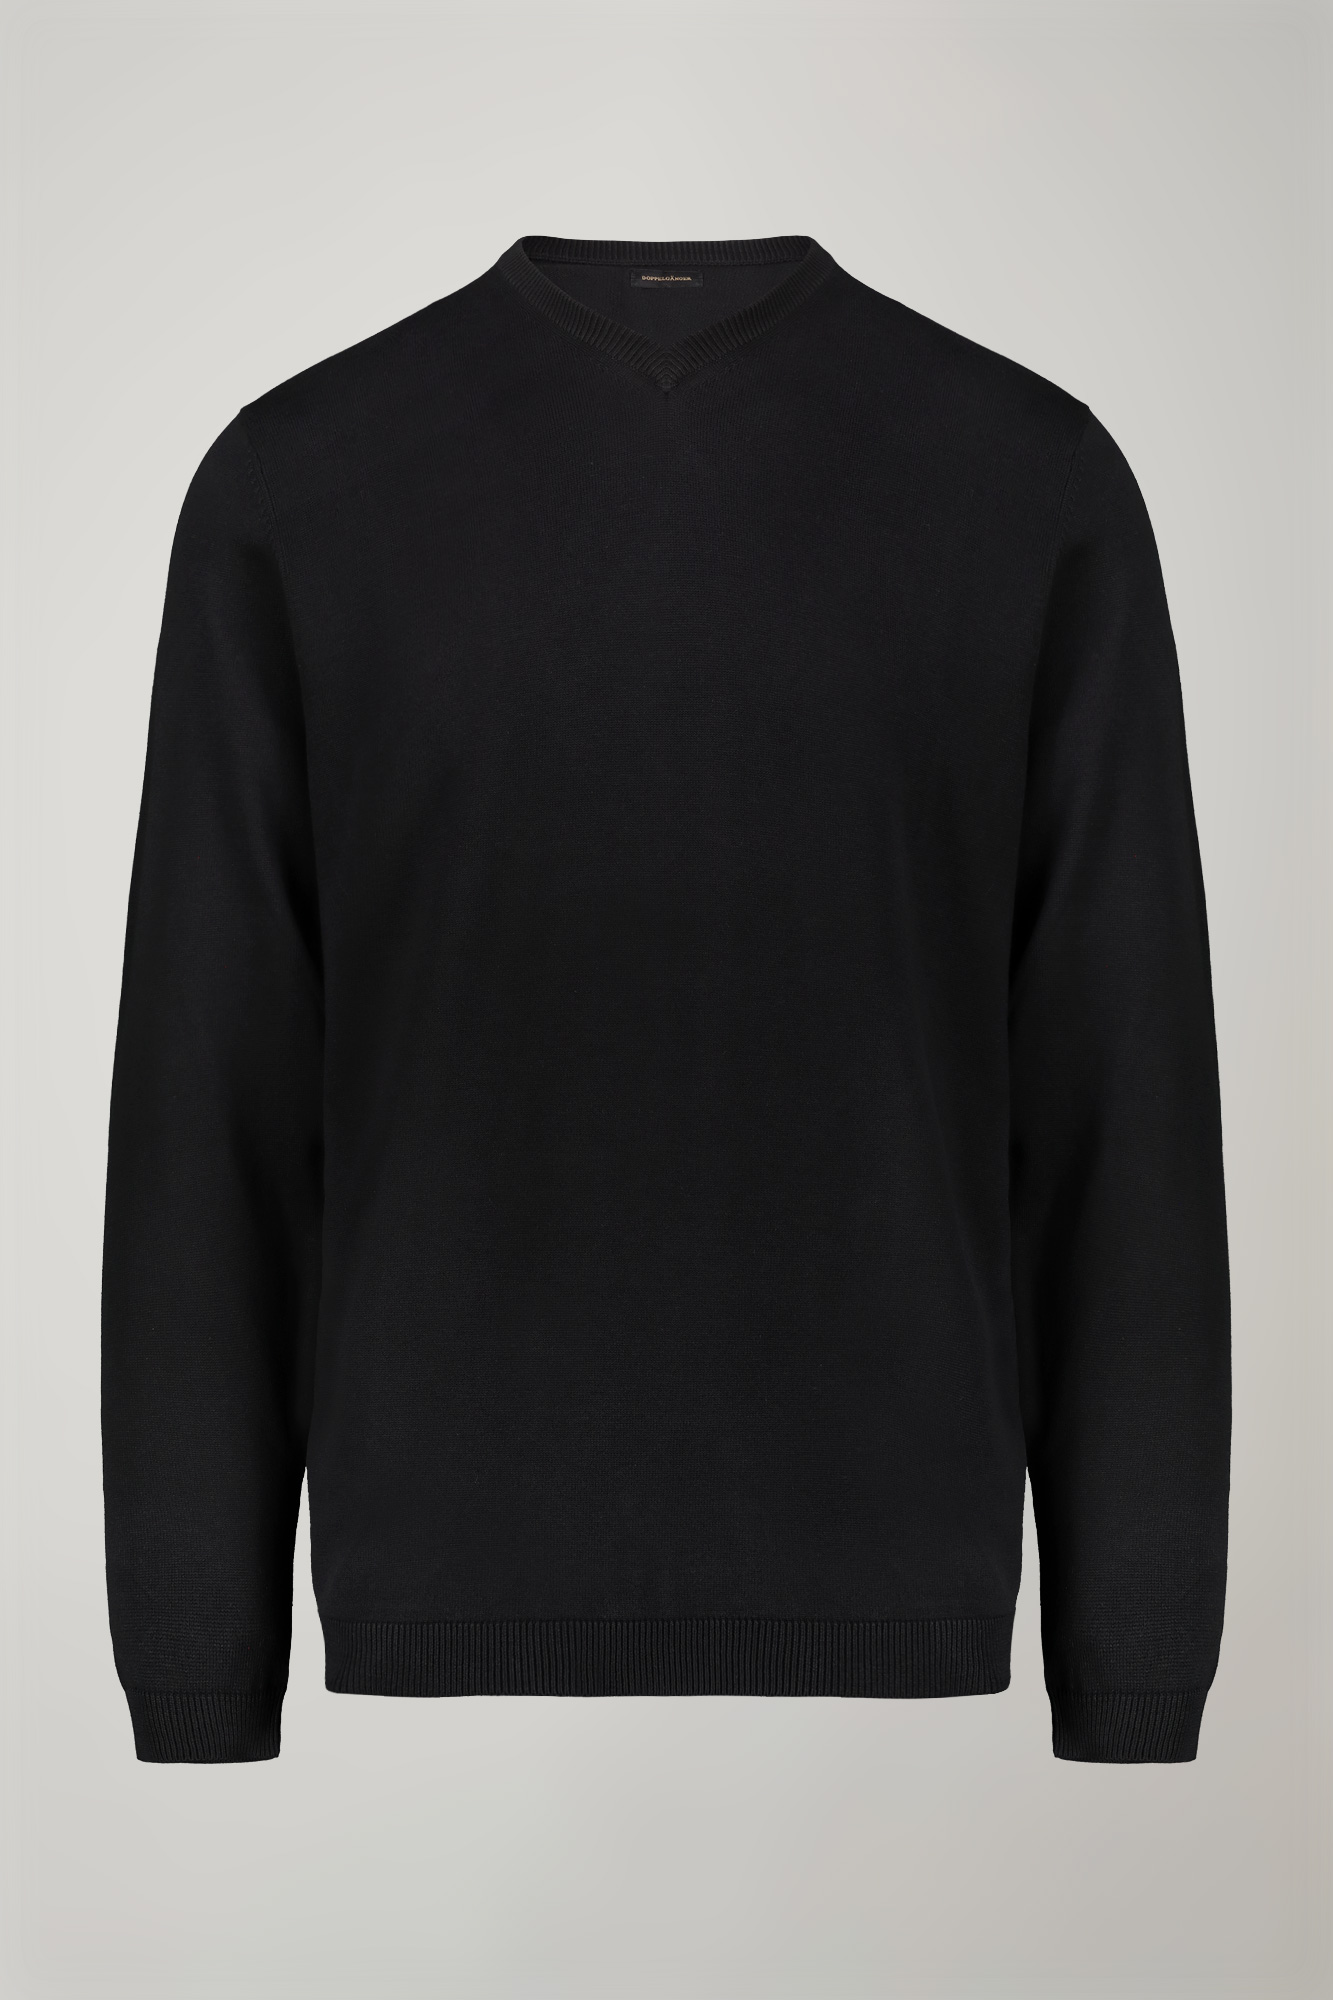 Men's v neck sweater 100% cotton regular fit image number null